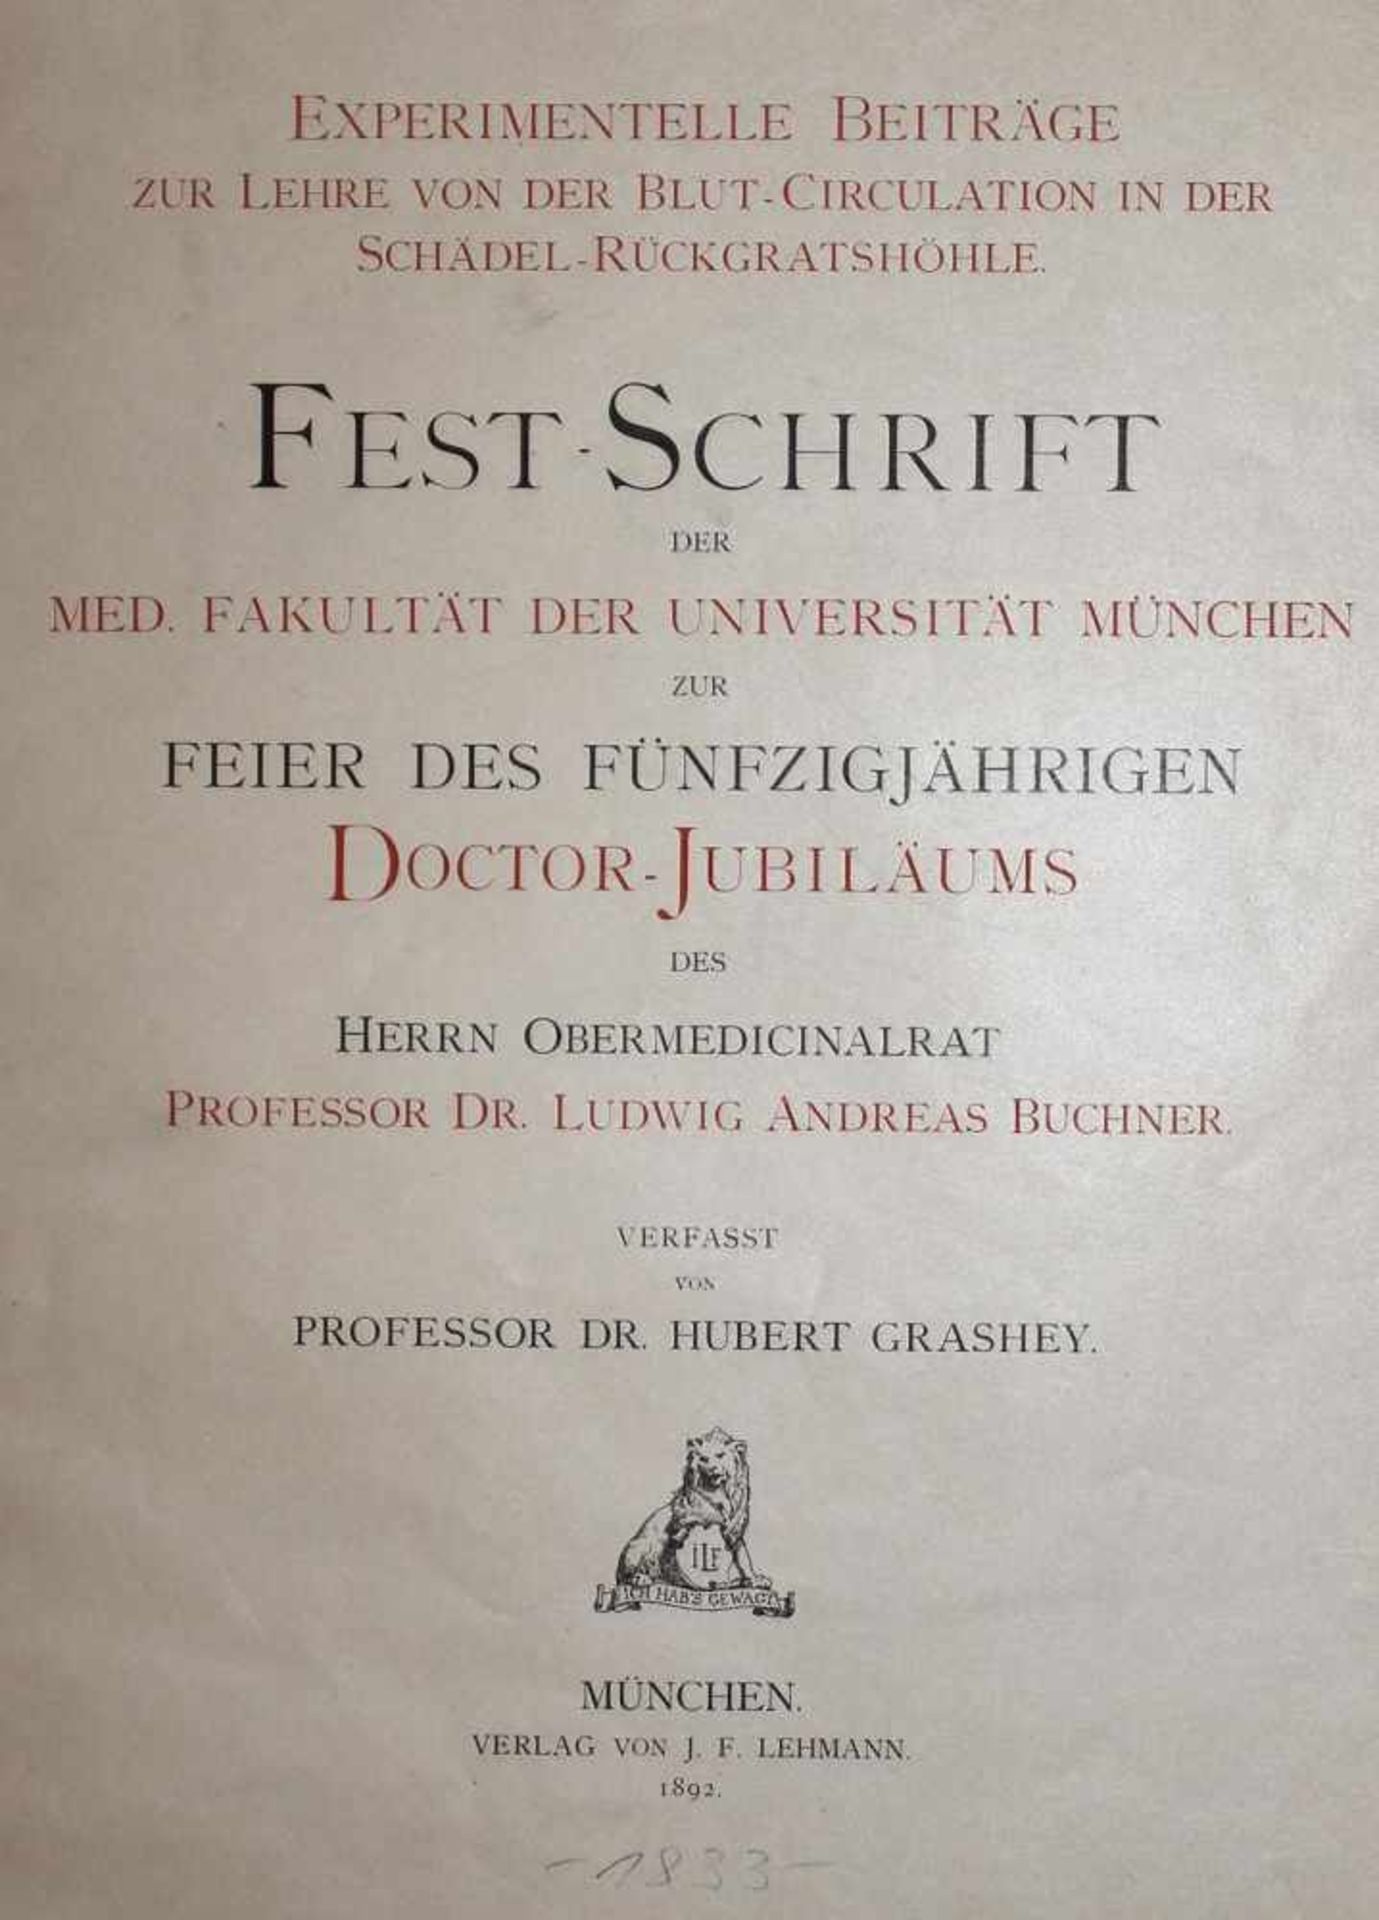 Grashey,H.Experimentelle Beiträge zur Lehre von der Blut-Circulation in der Schädel-